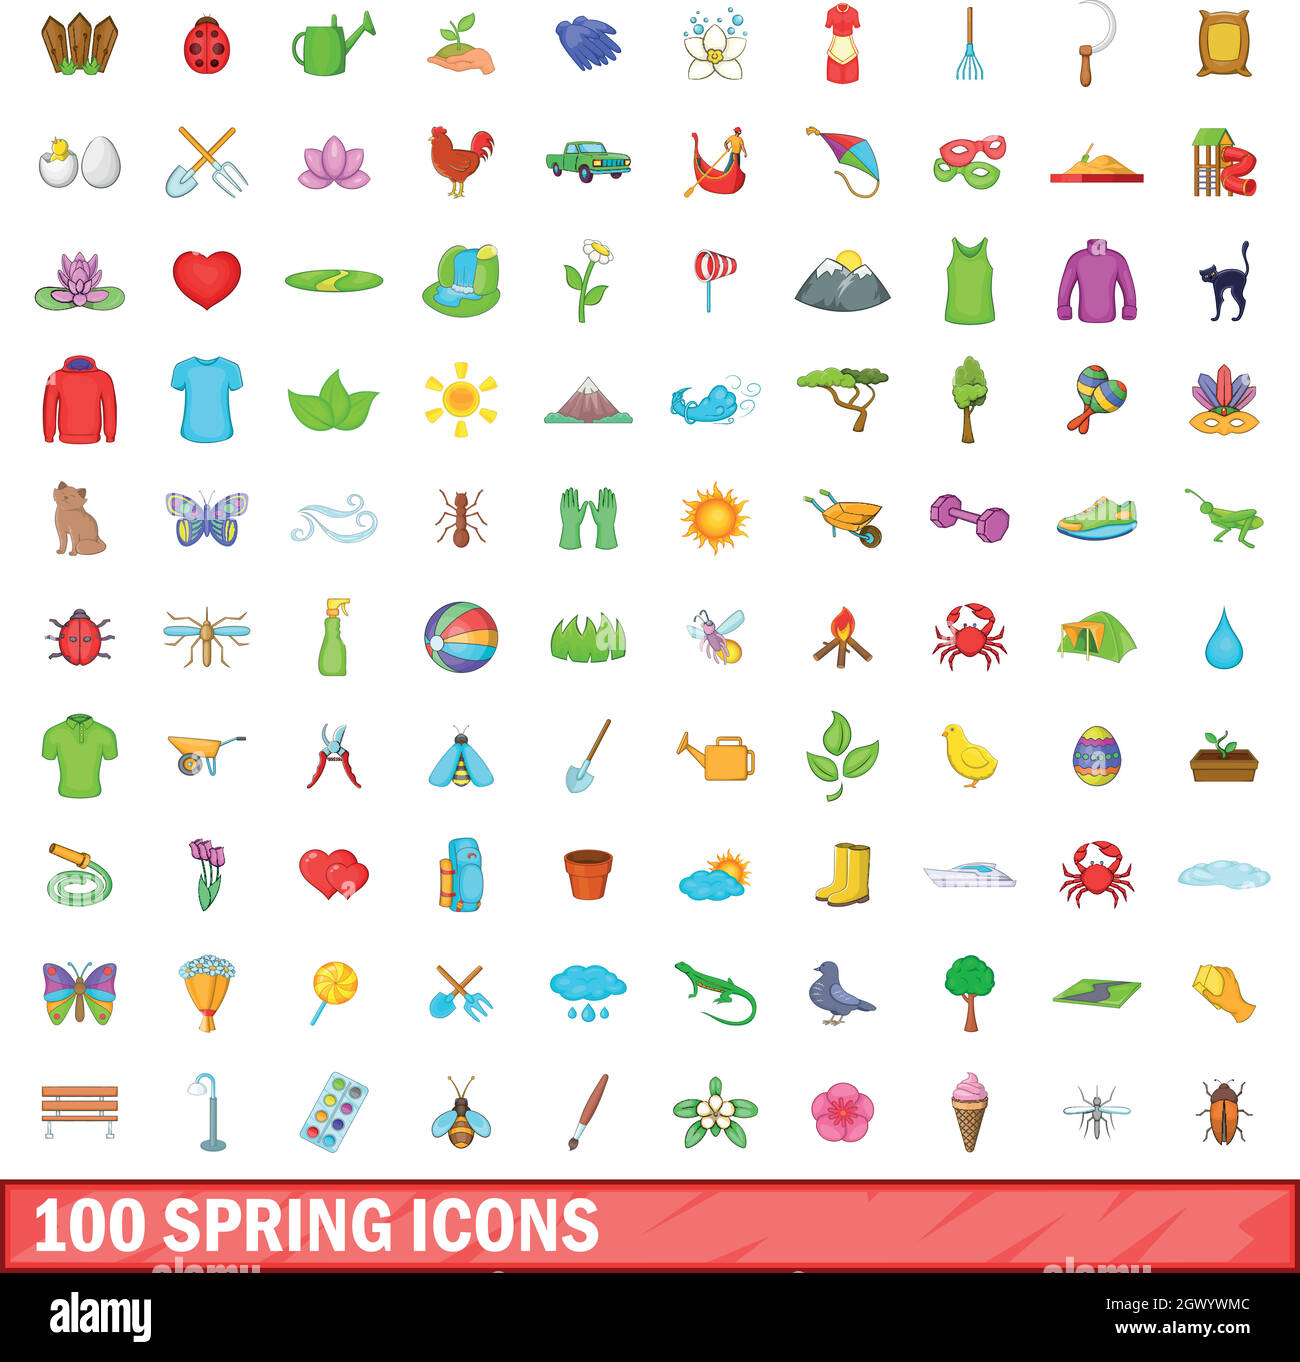 Au printemps 100, cartoon style icons set Illustration de Vecteur